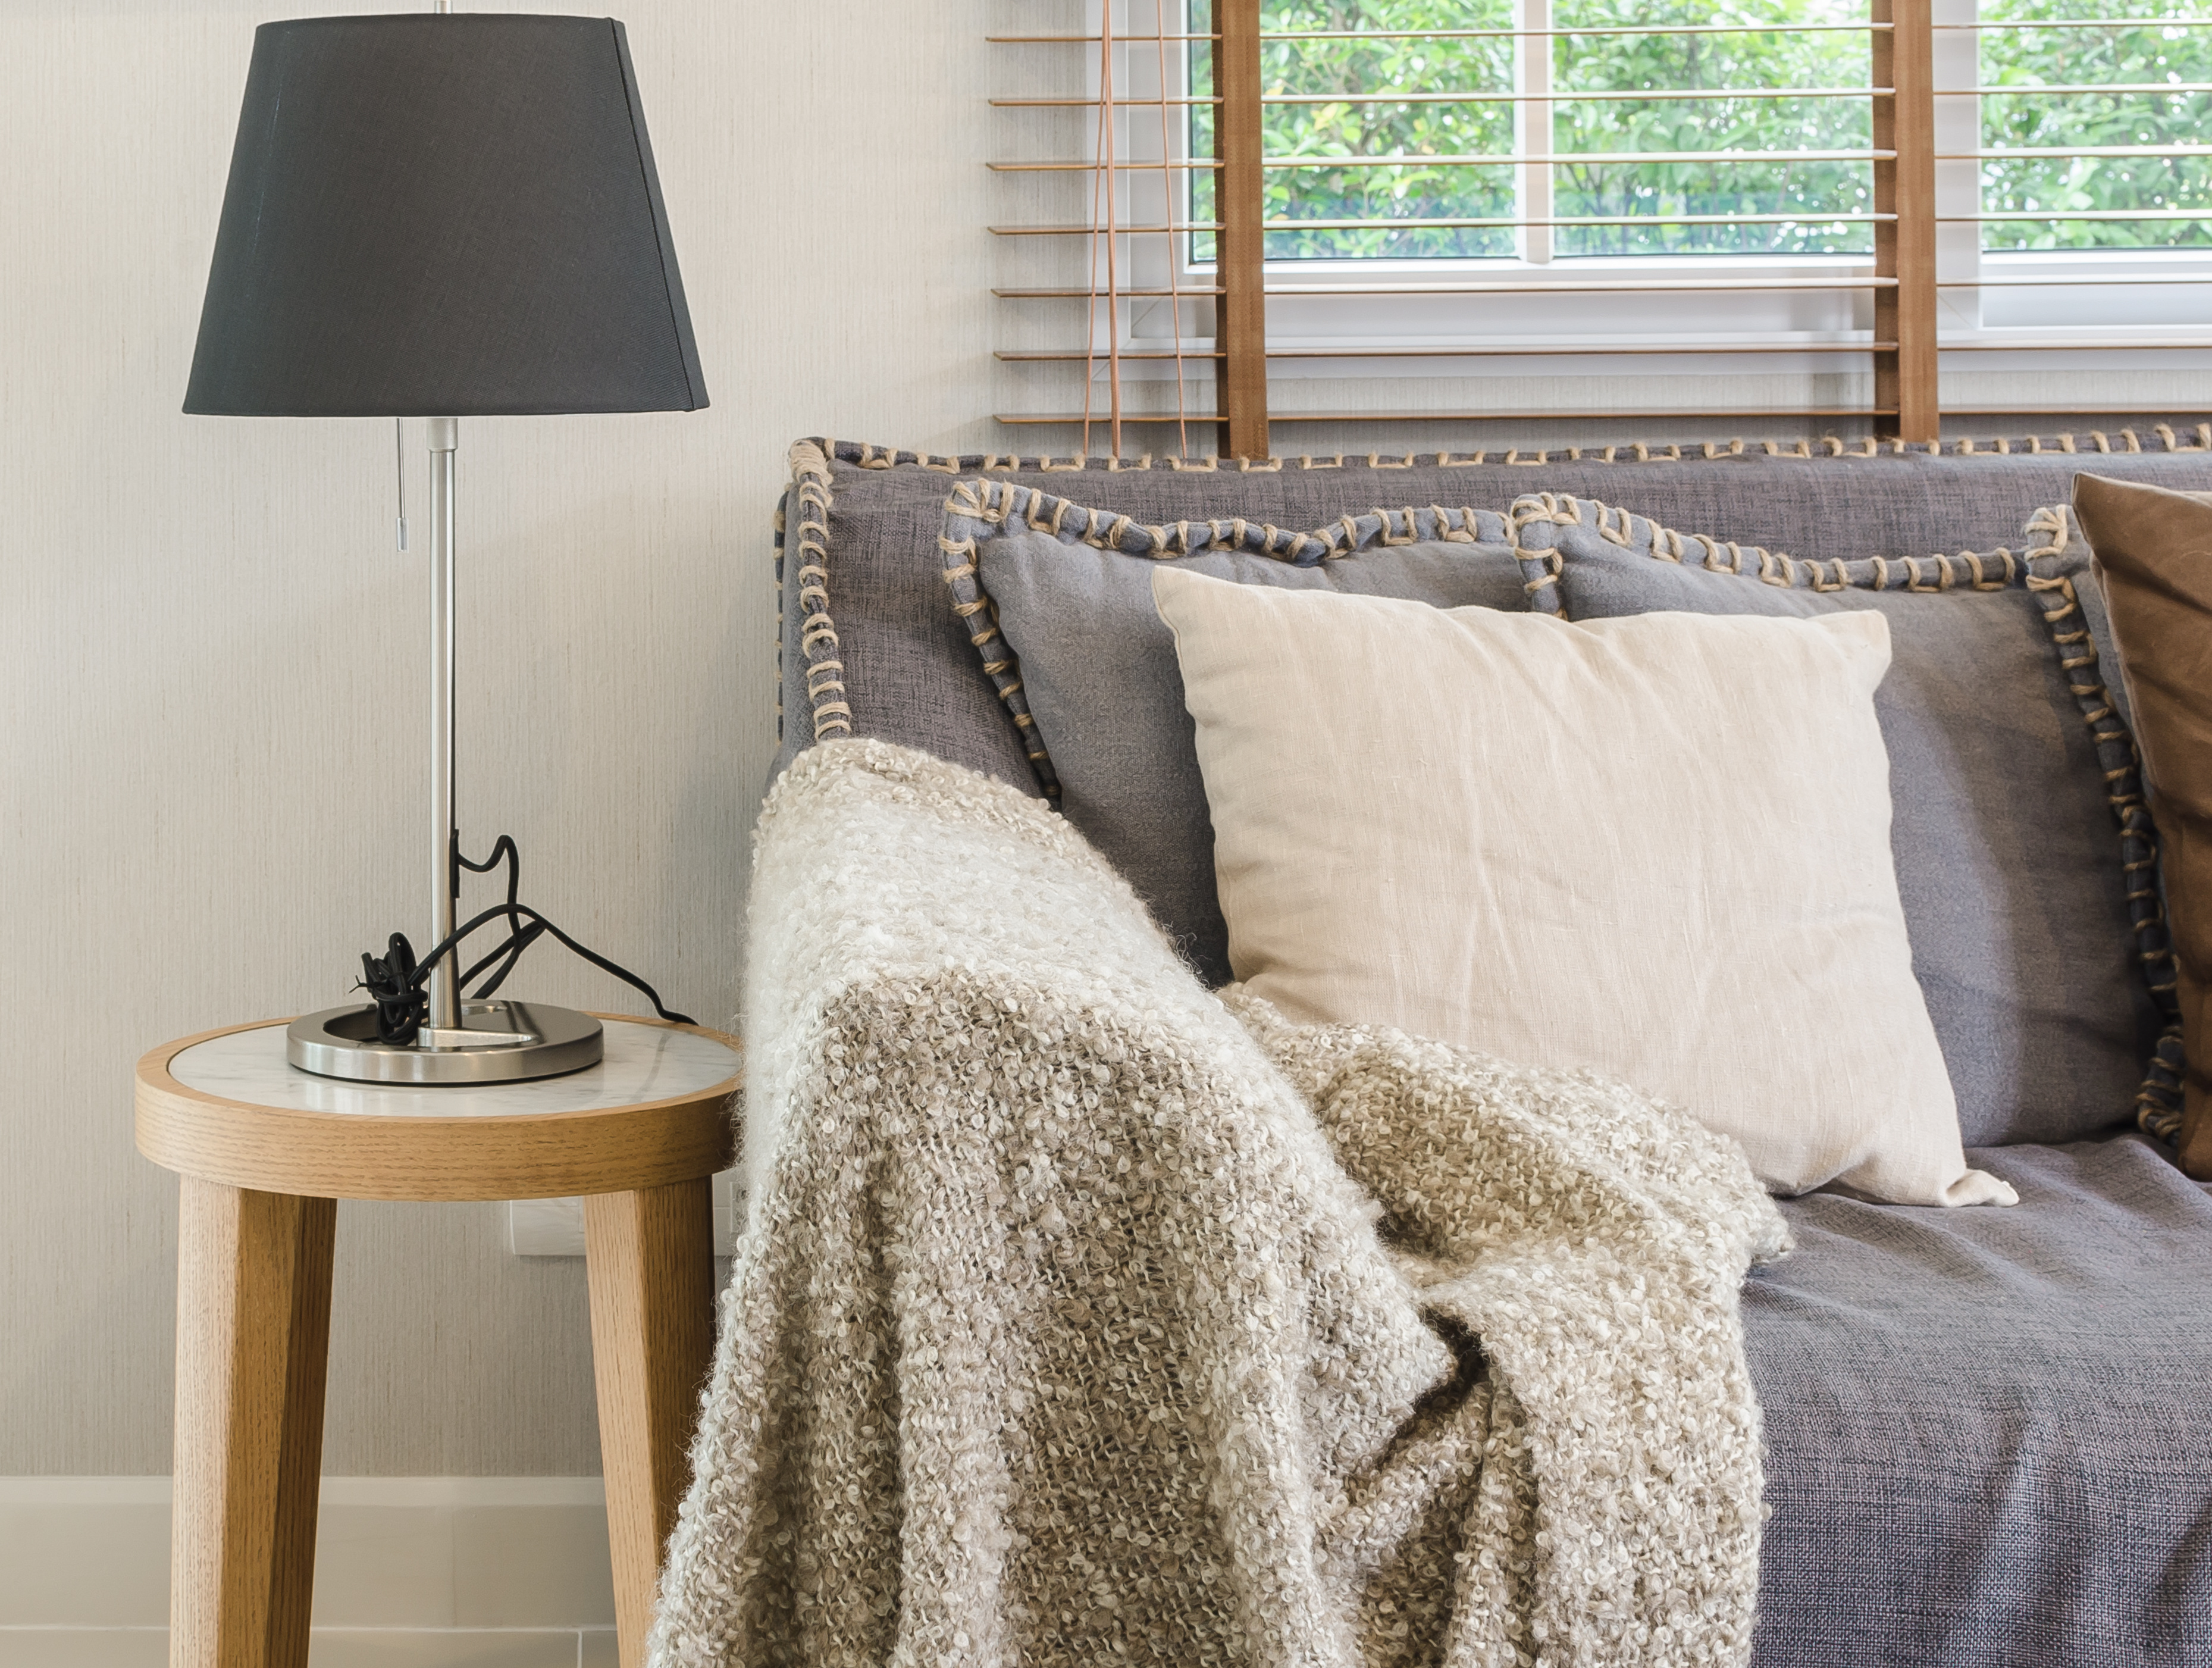 brown-blanket-on-sofa-in-living-room